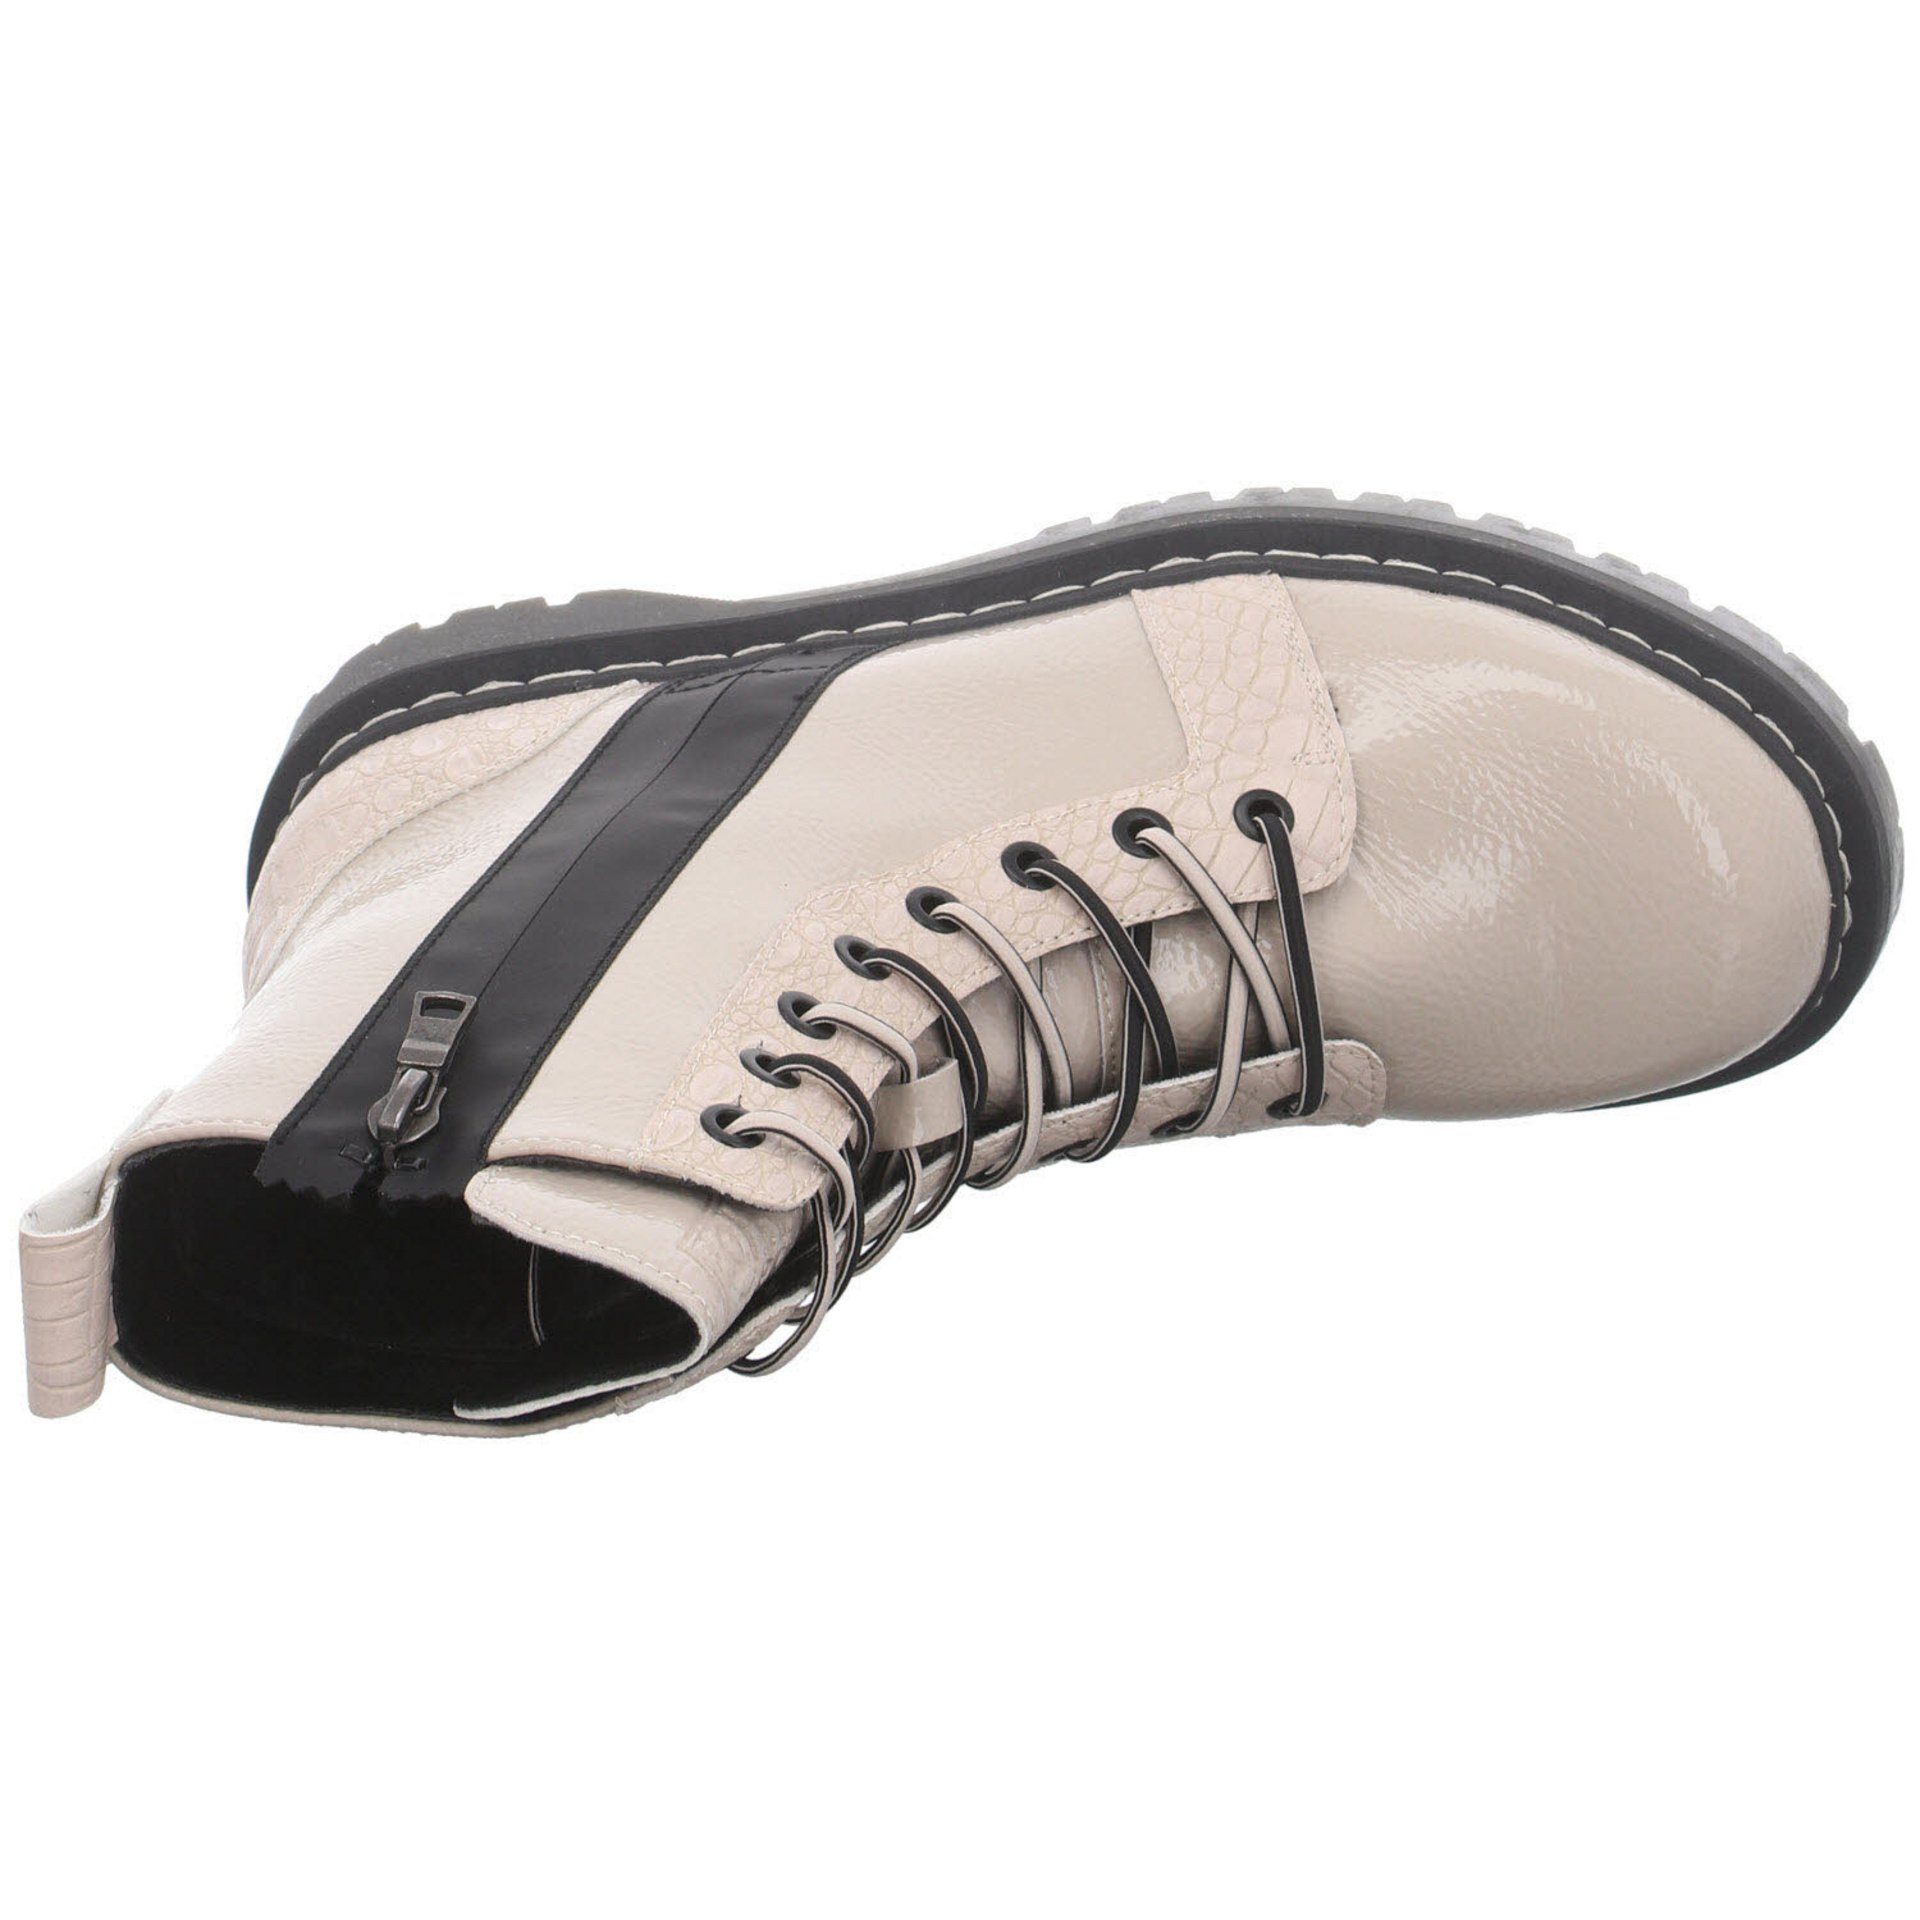 Damen Schuhe kombi-schwarz Freizeit Big Synthetik Stiefel Elegant beige bugatti Stiefel Boots